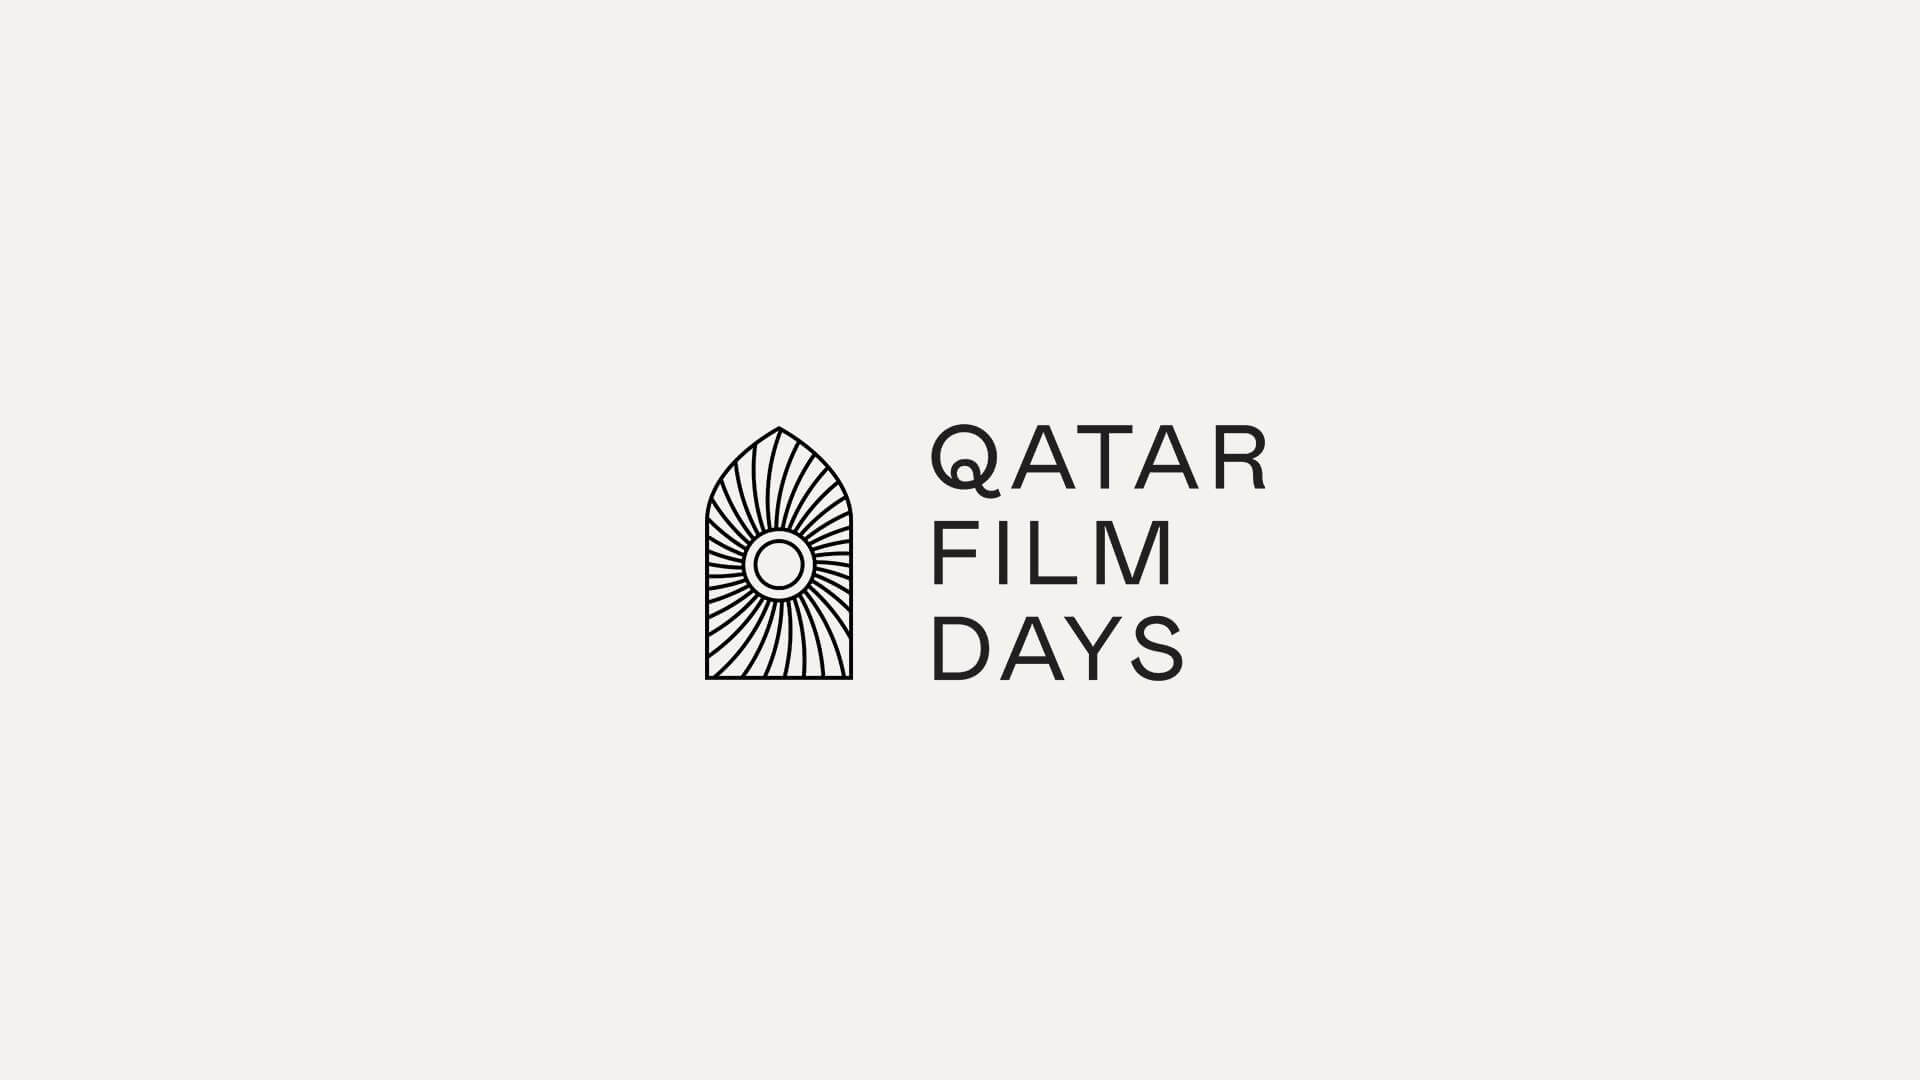 Qatar Film Days 2021